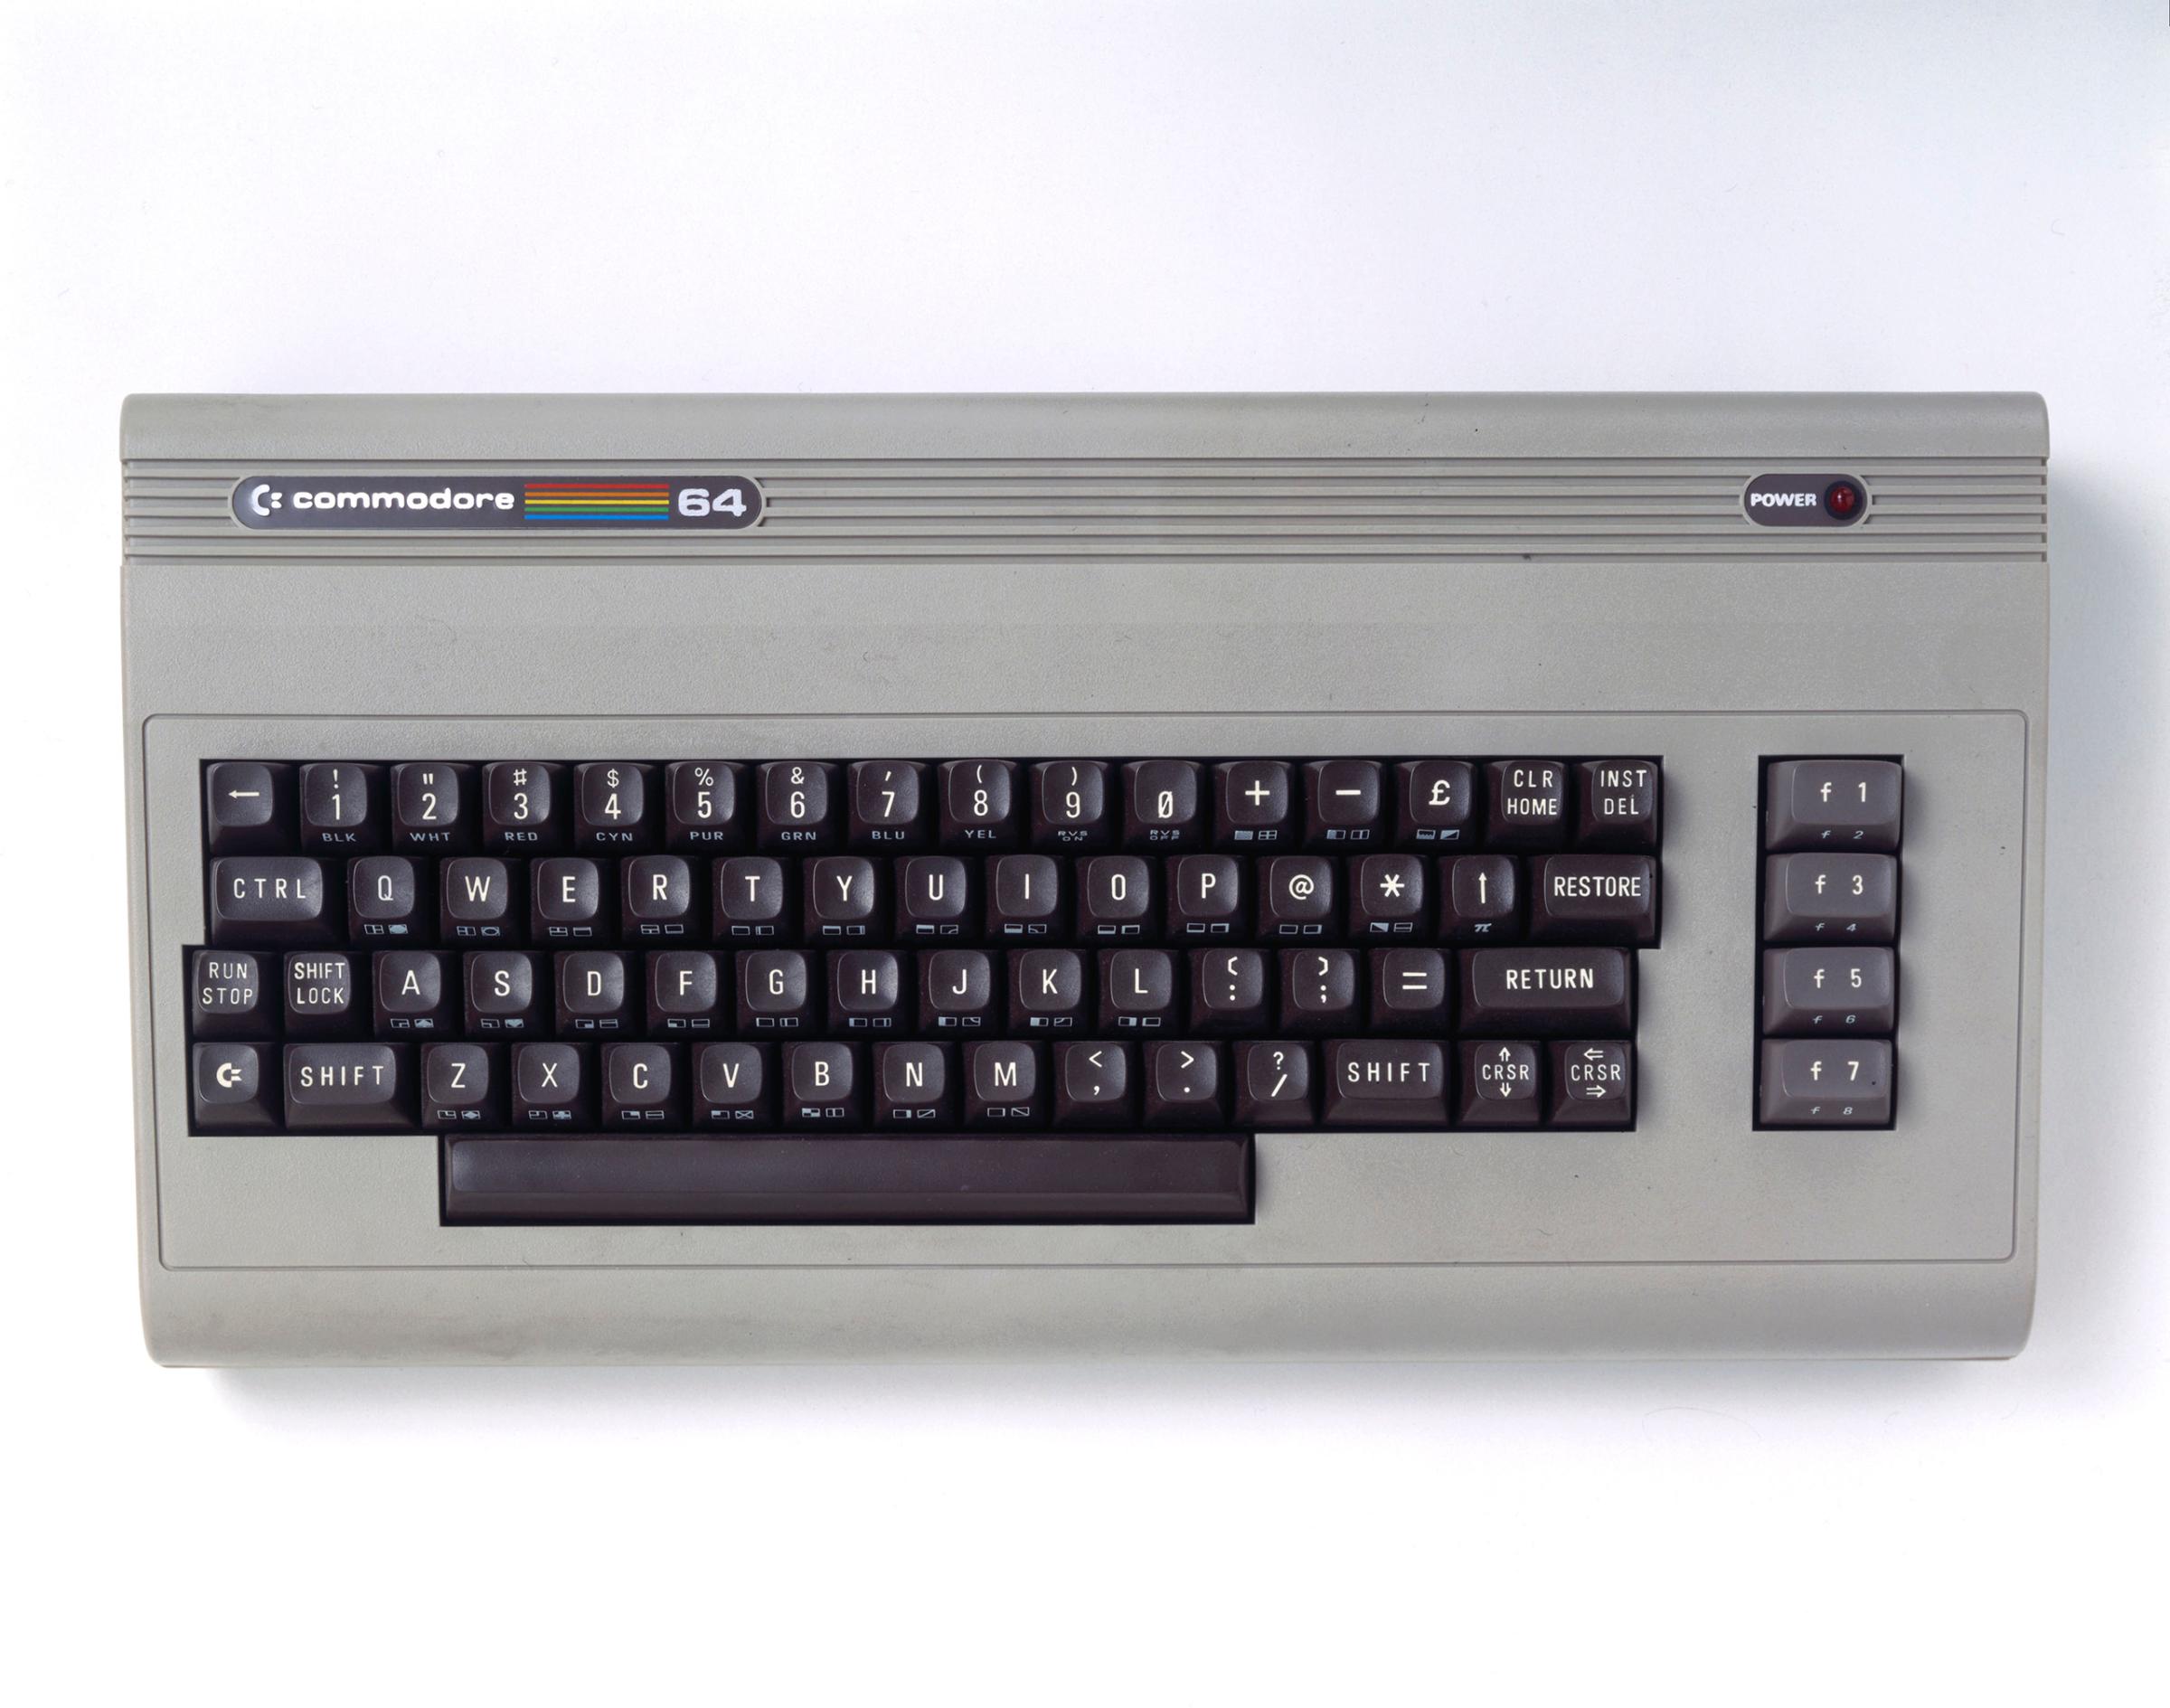 Commodore 64 microcomputer, c 1985.